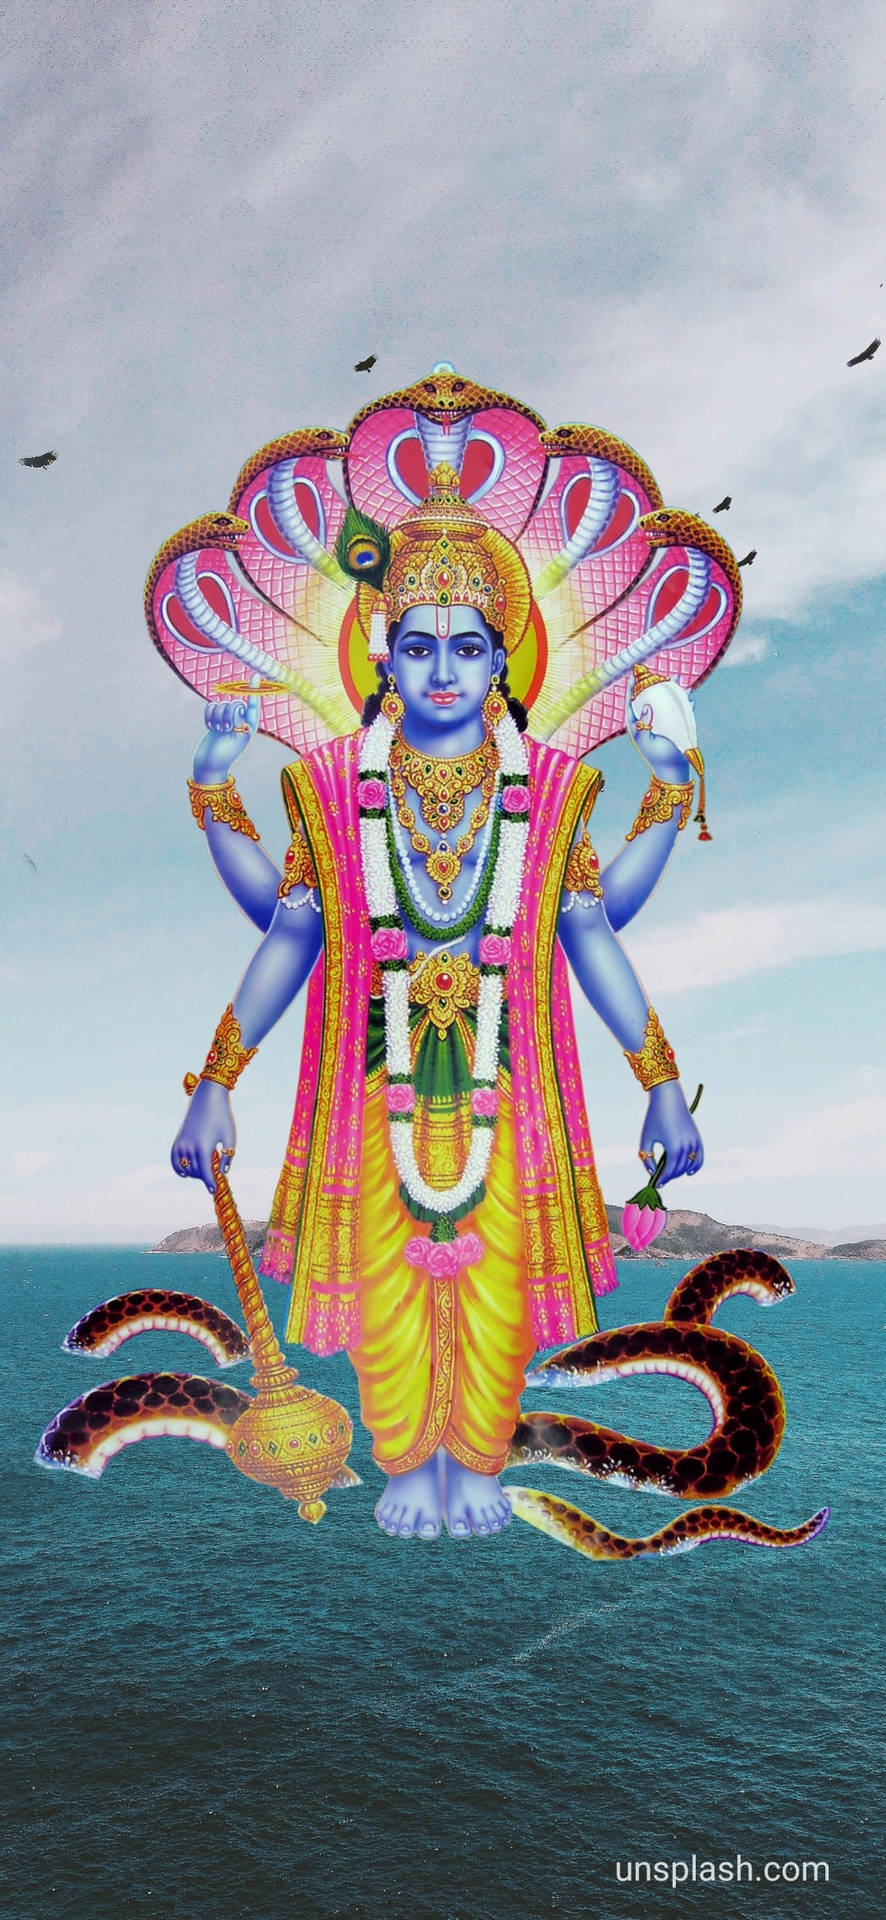 Schwebenderherr Vishnu Mit Rosafarbenem Kobra Wallpaper